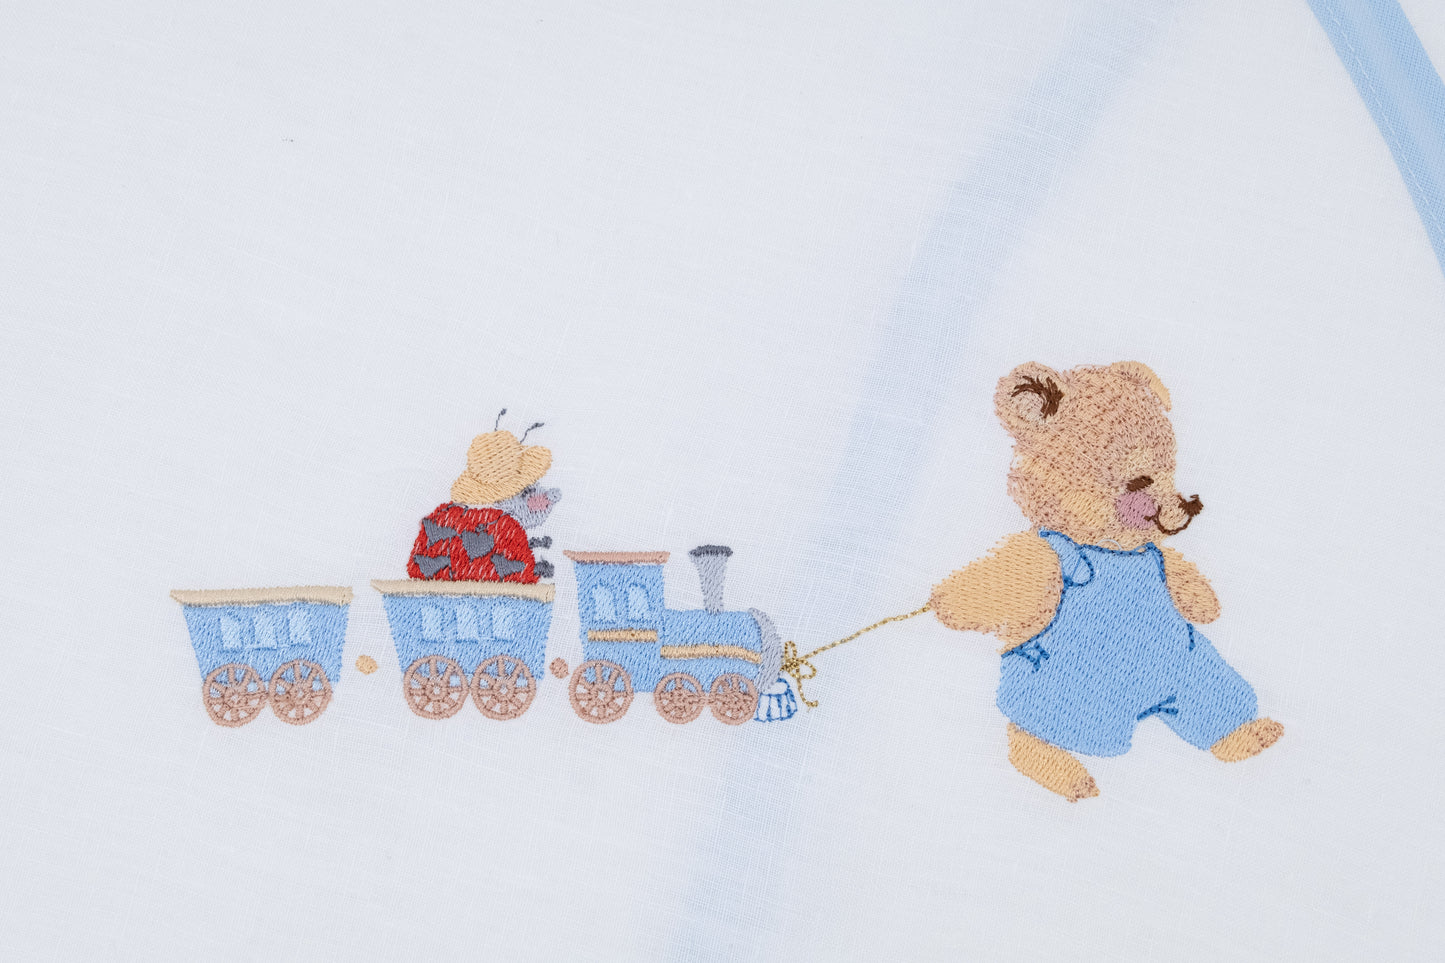 Star sleeping bag with teddy bear, ladybug and embroidered train